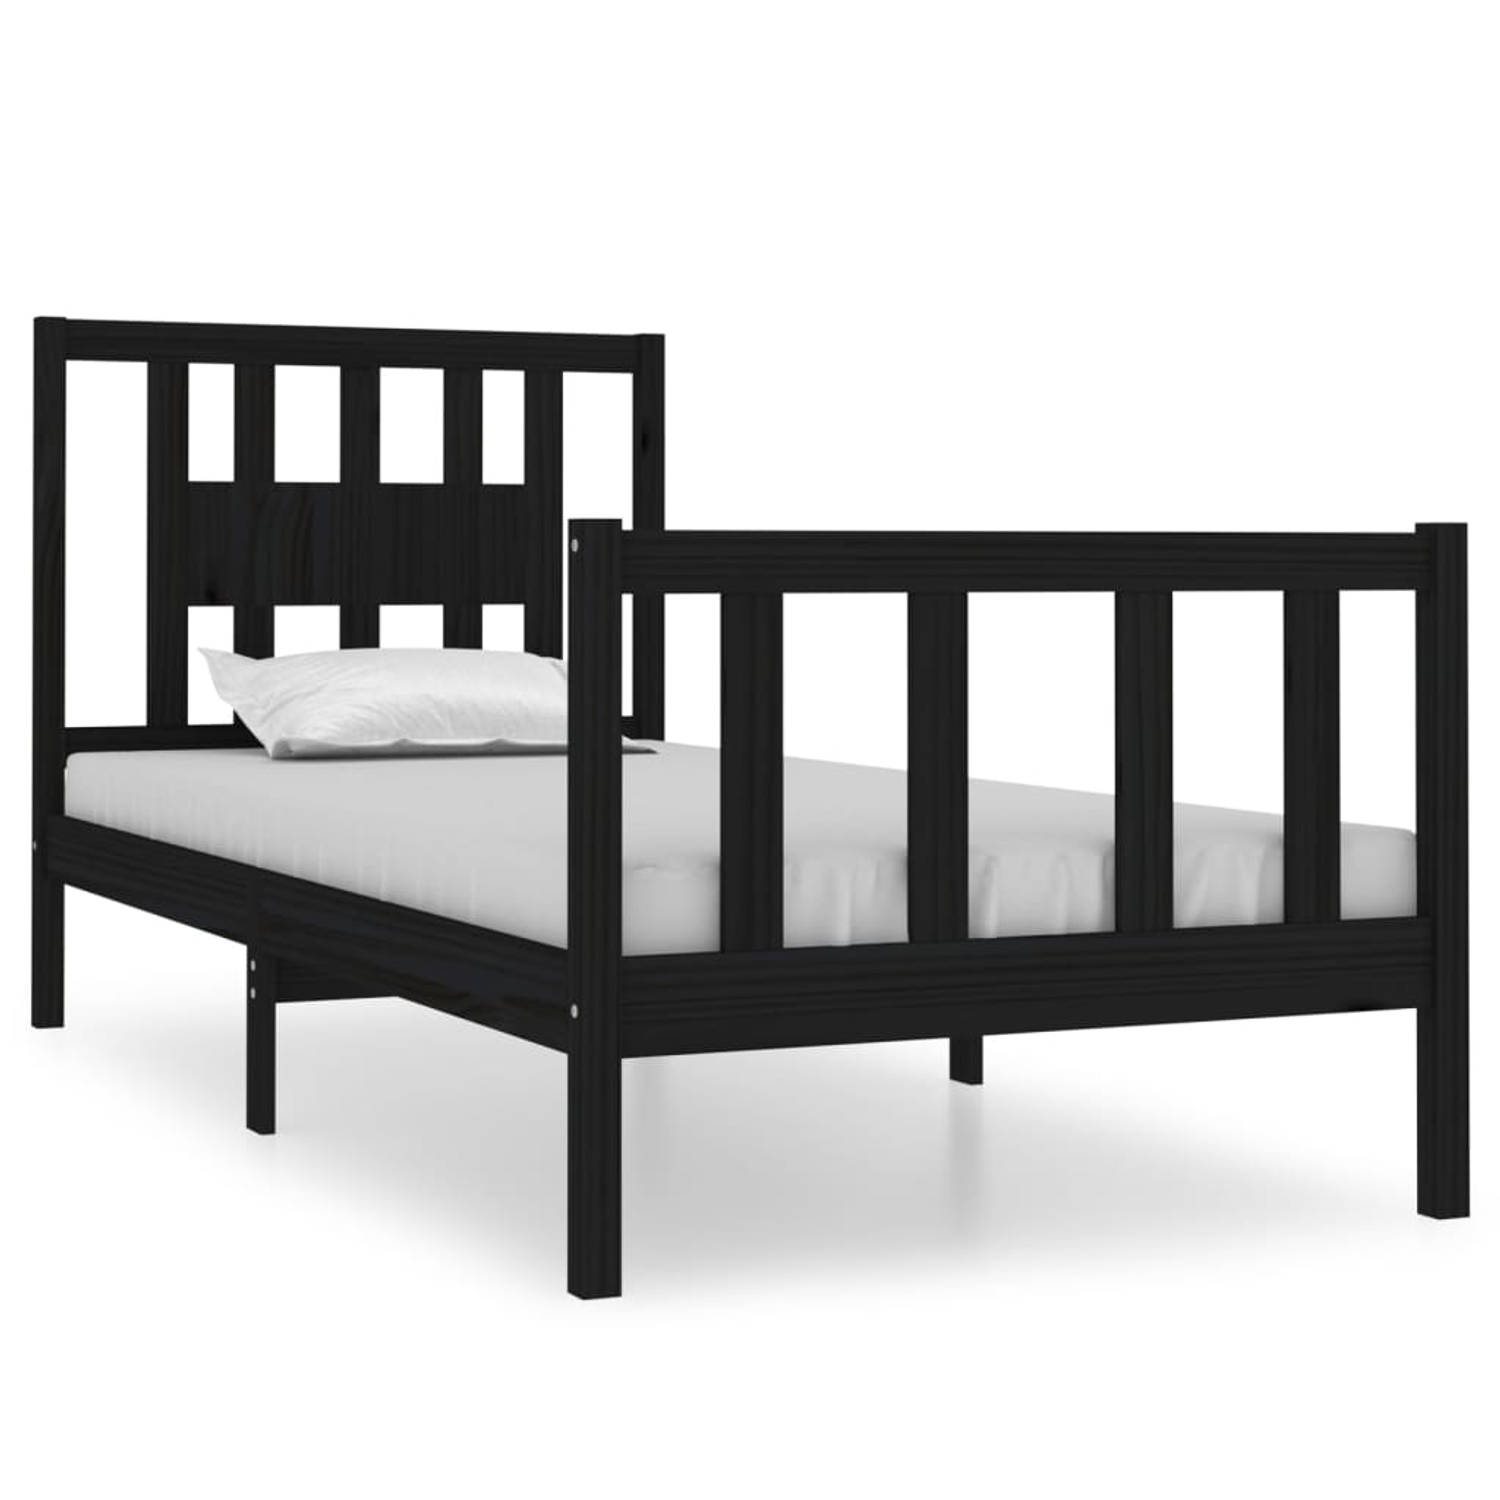 The Living Store Bedframe massief hout zwart 75x190 cm 2FT6 Small Single - Bedframe - Bedframes - Eenpersoonsbed - Bed - Bedombouw - Ledikant - Houten Bedframe - Eenpersoonsbedden